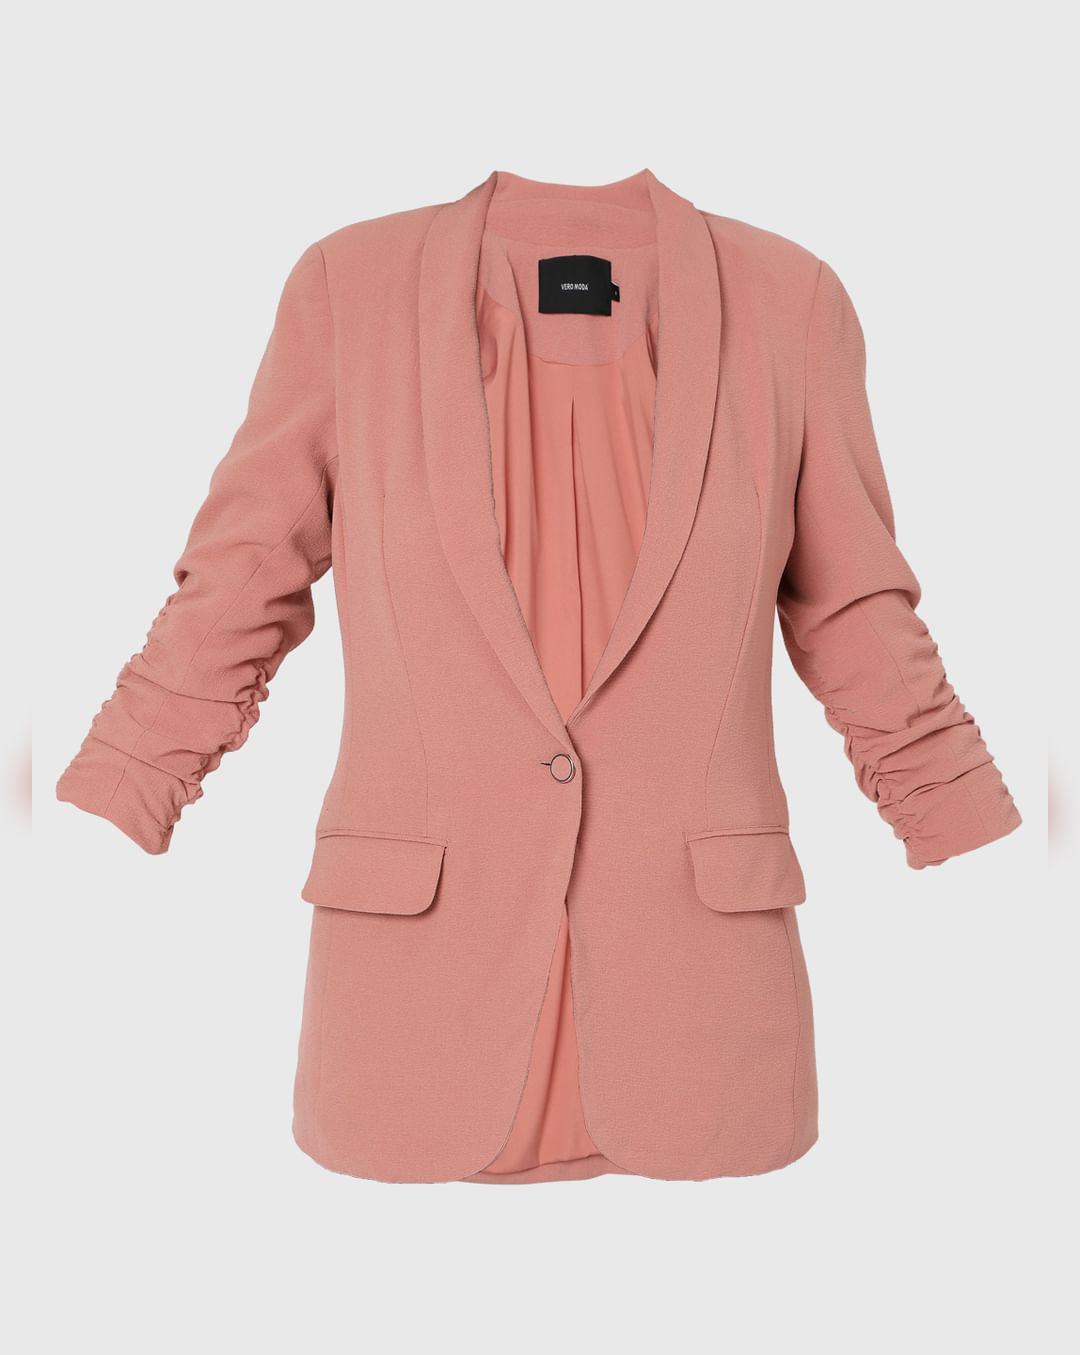 slot køre Legepladsudstyr Buy Pink Ruched Sleeve Blazer Online In India.